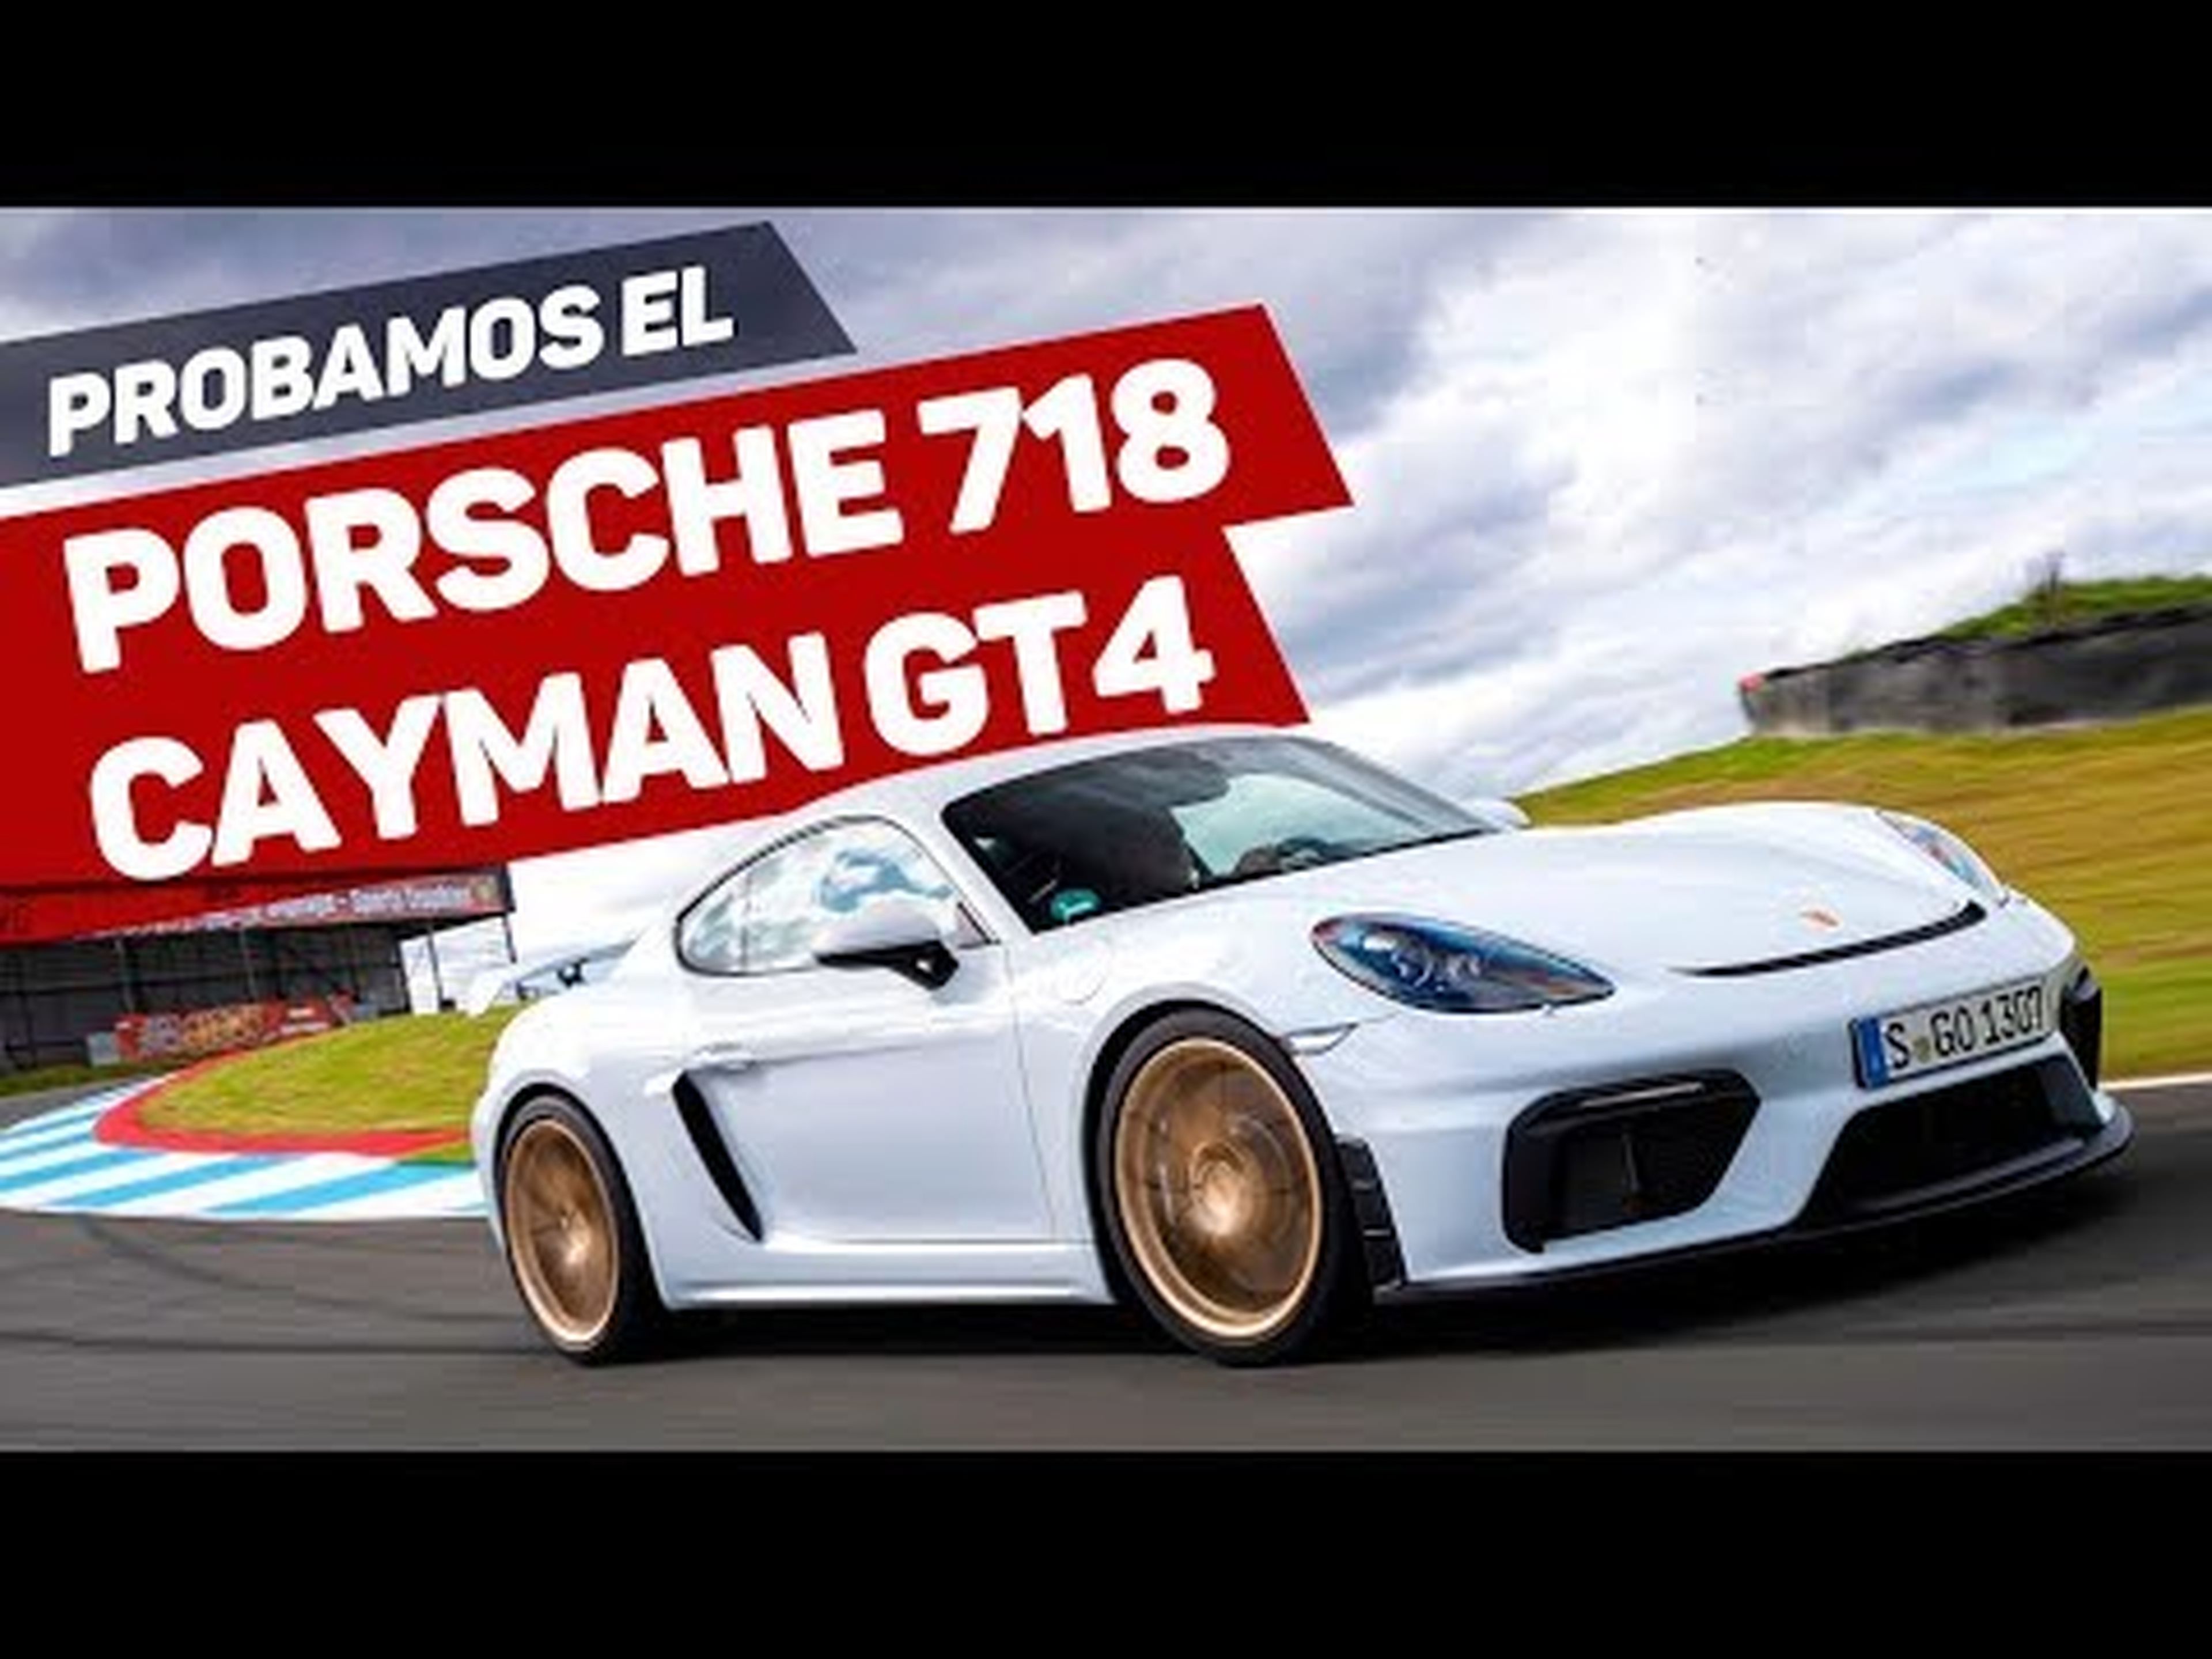 Prueba Porsche 718 Cayman GT4 2019 en circuito / Test a fondo / Review en español